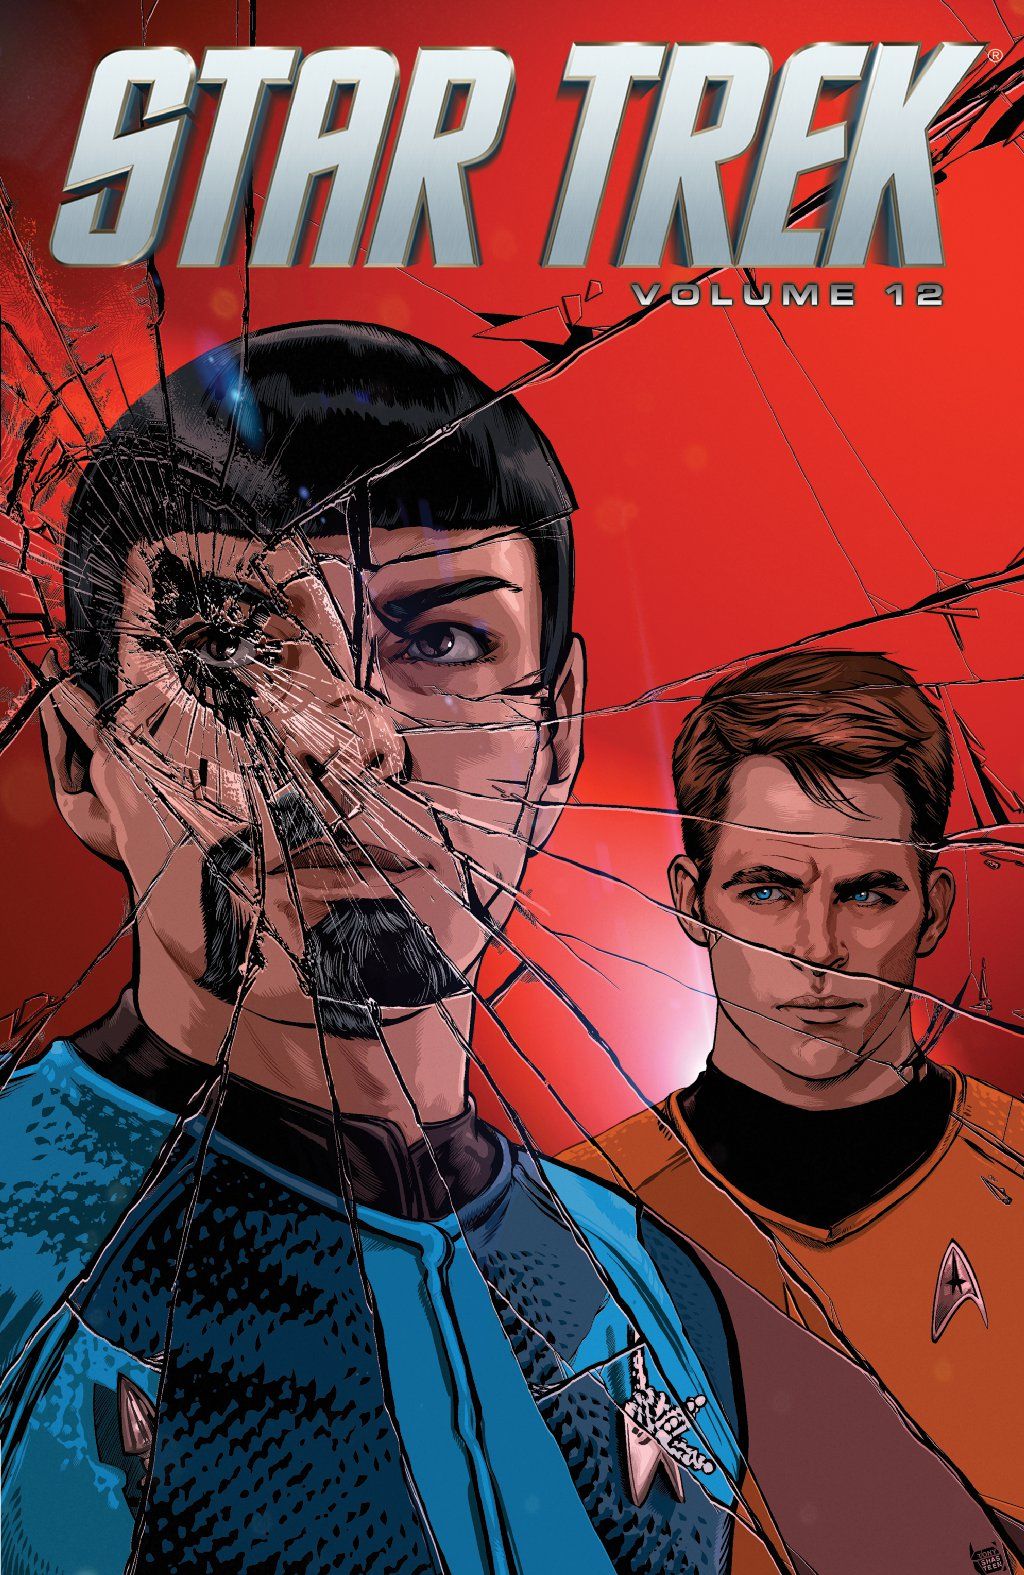 Star Trek Ongoing Volume 12